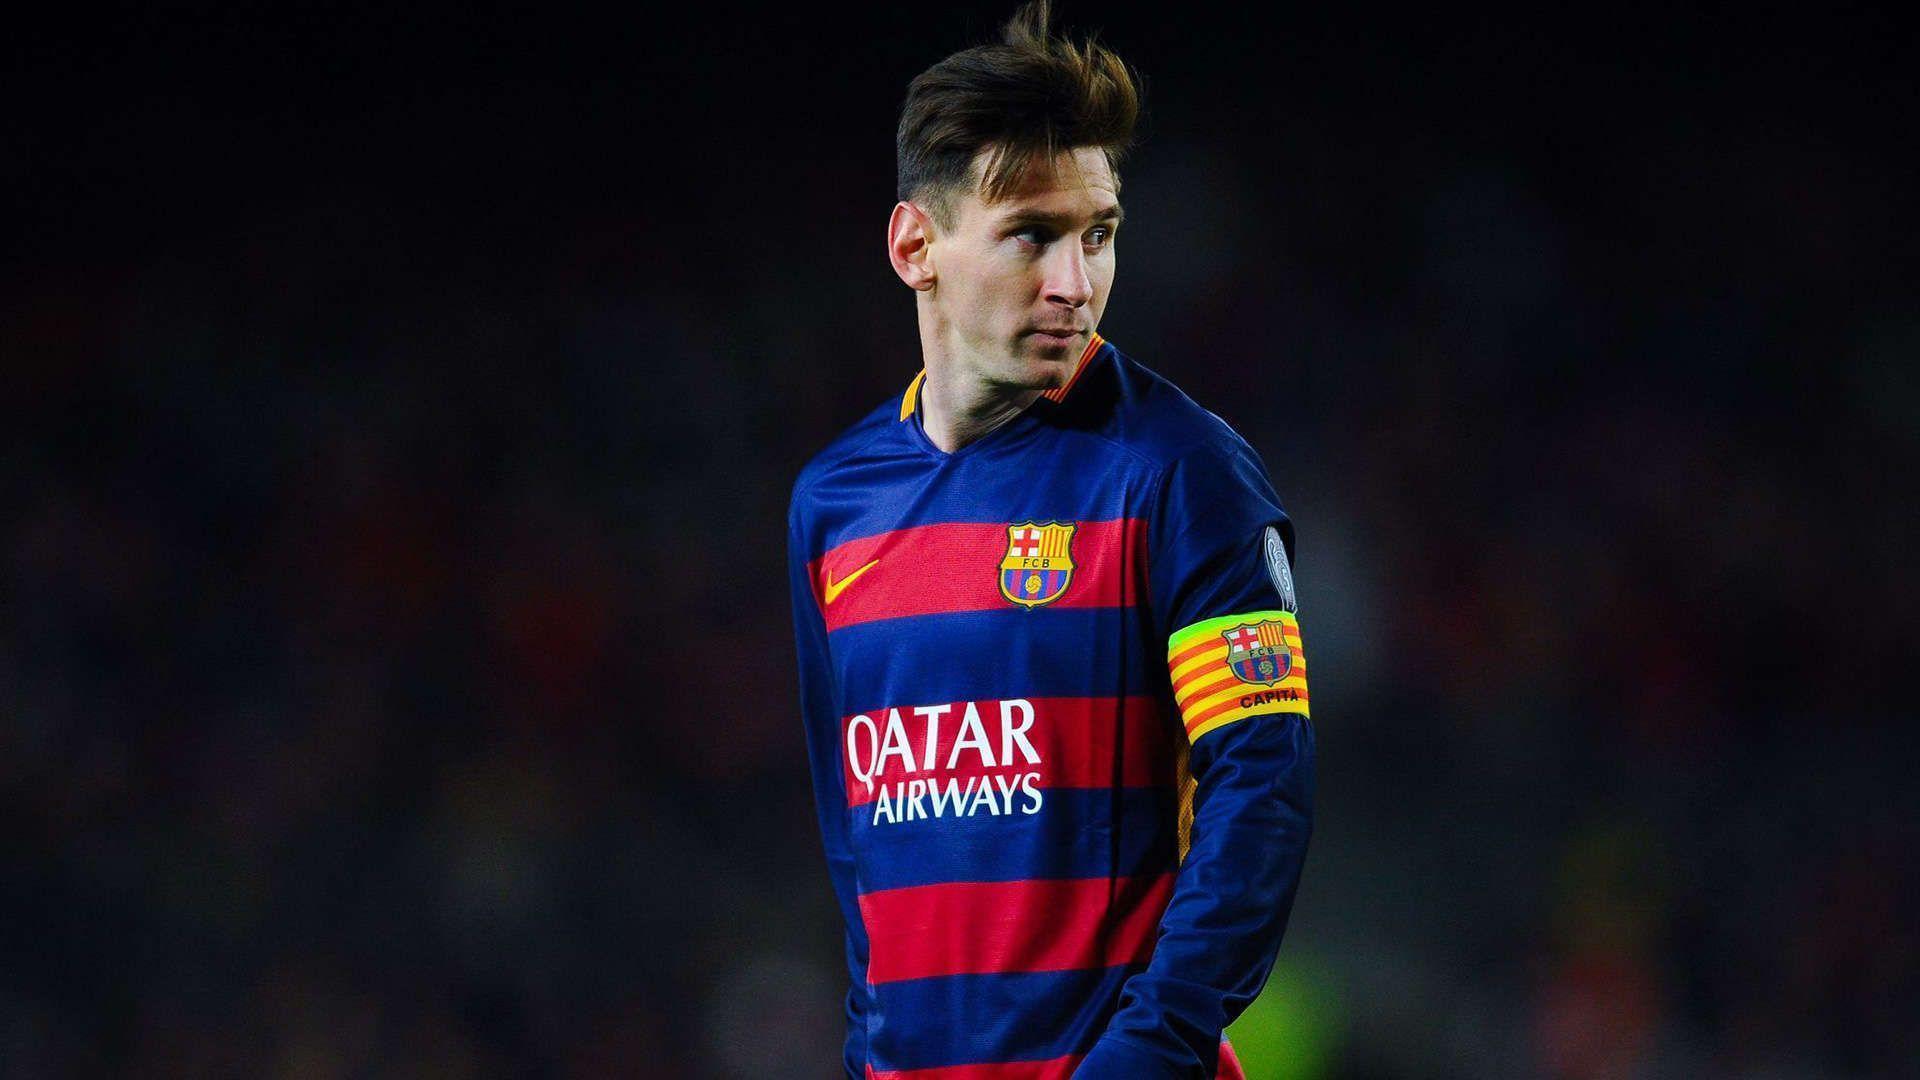 99+] Lionel Messi 2016 Wallpaper HD 1080p - WallpaperSafari